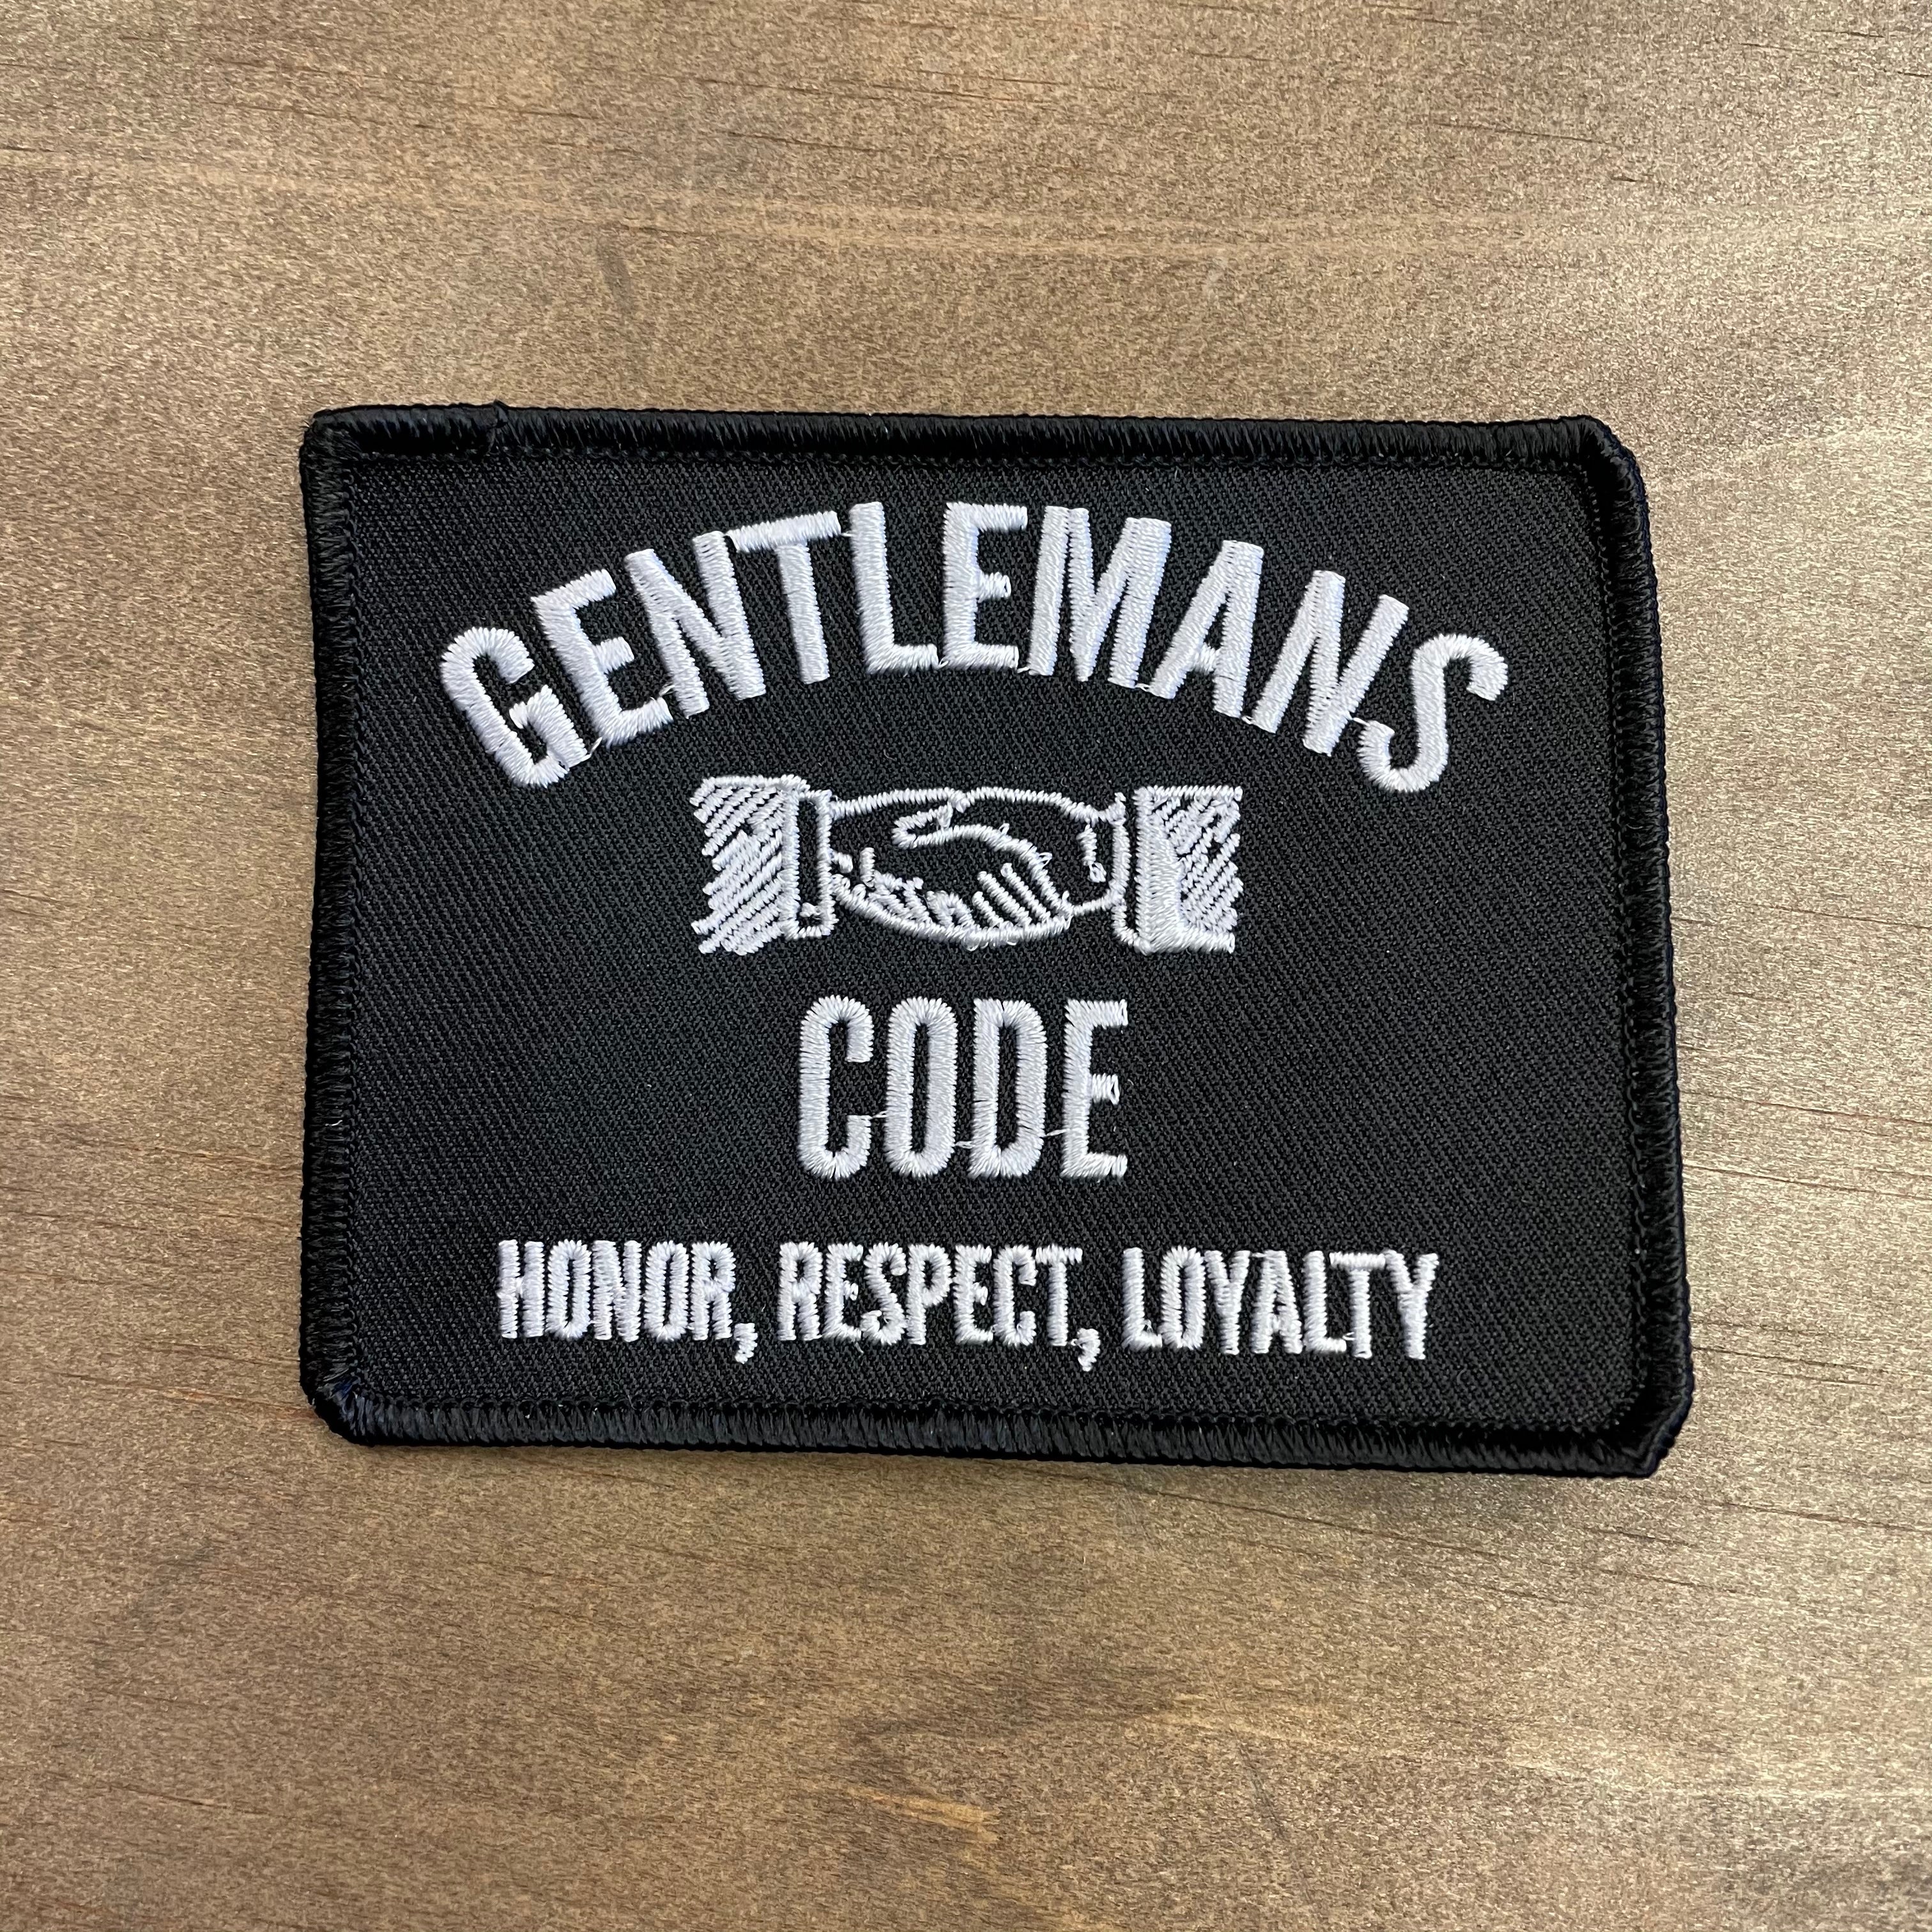 Gentlemans Code Patch